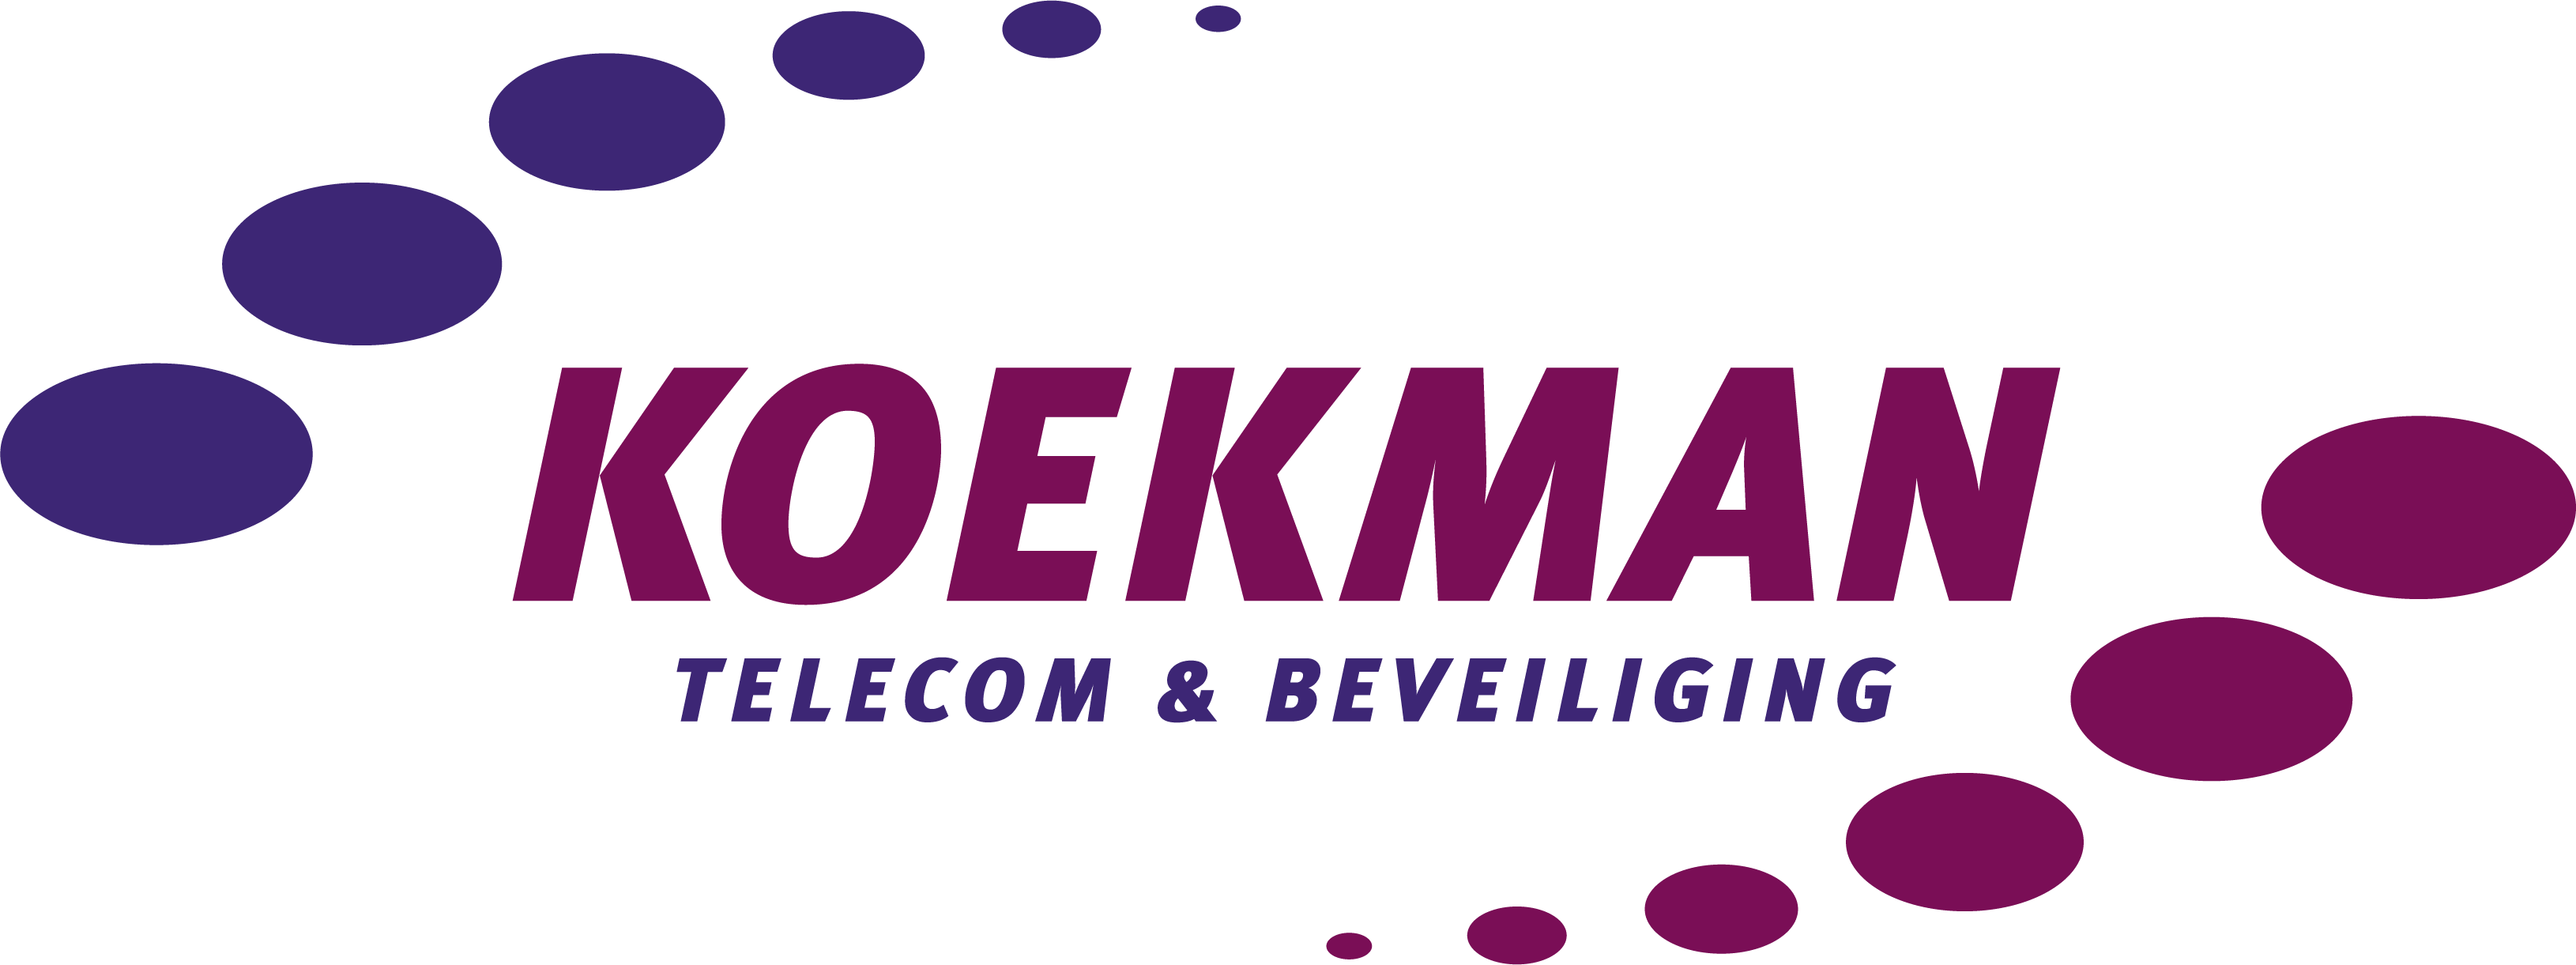 Koekman Telecom & Beveiliging